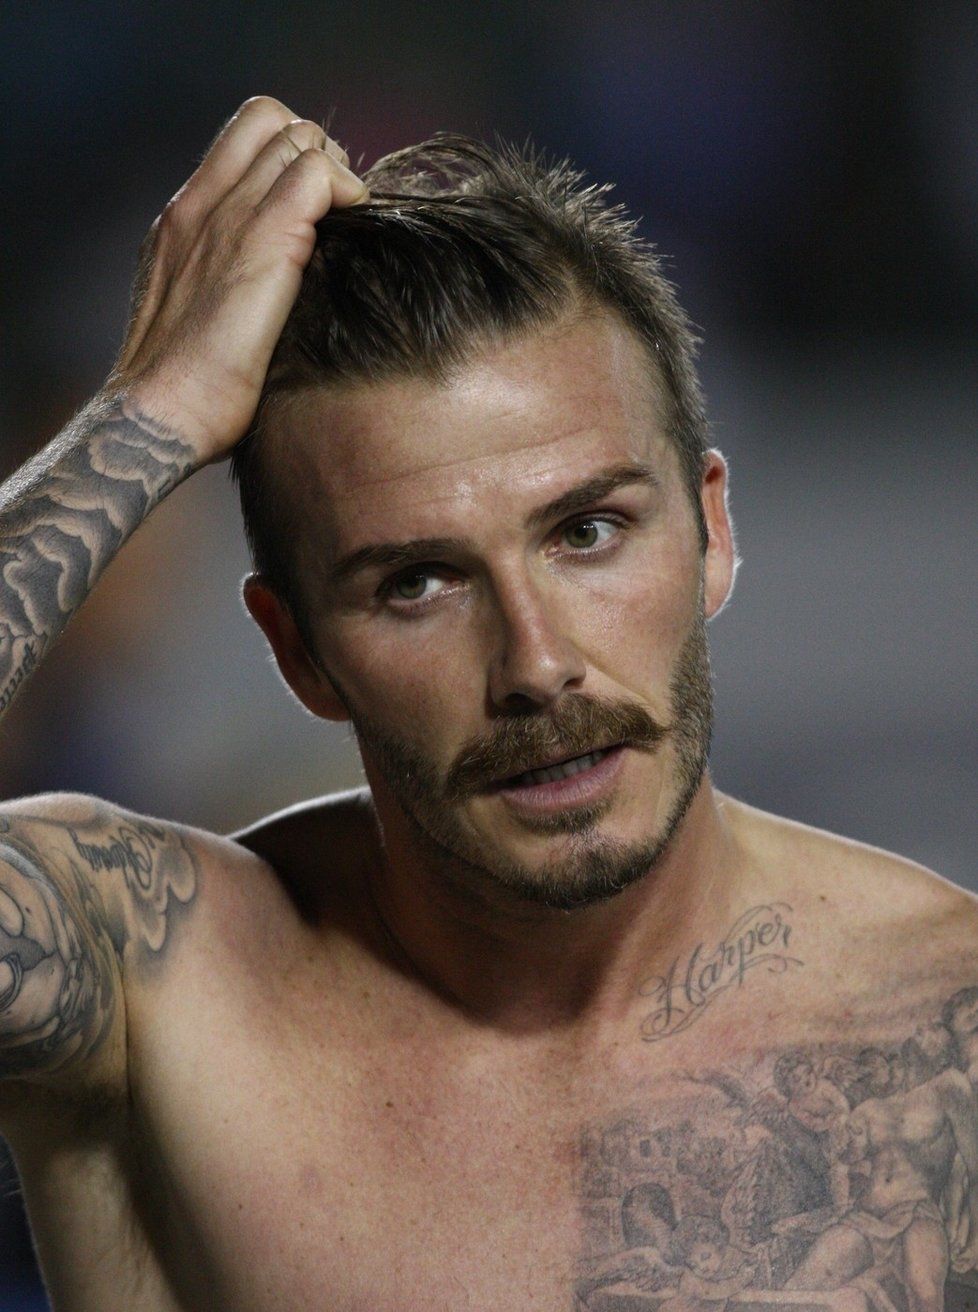 David Beckham vypadá s knírem úplně jinak, než bez něj